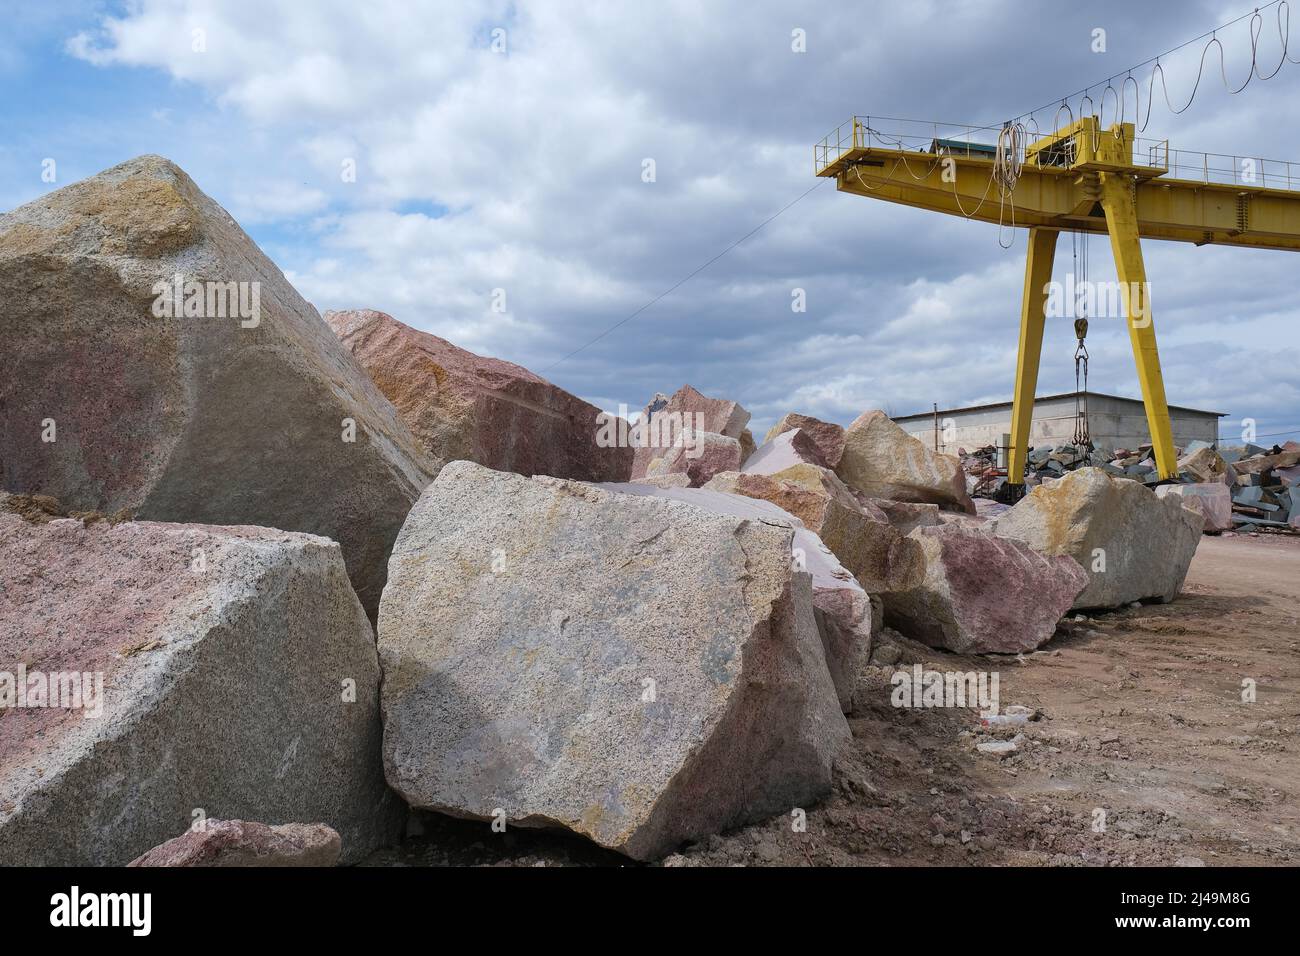 Carrière avec exploitation minière et production de pierre. Banque D'Images